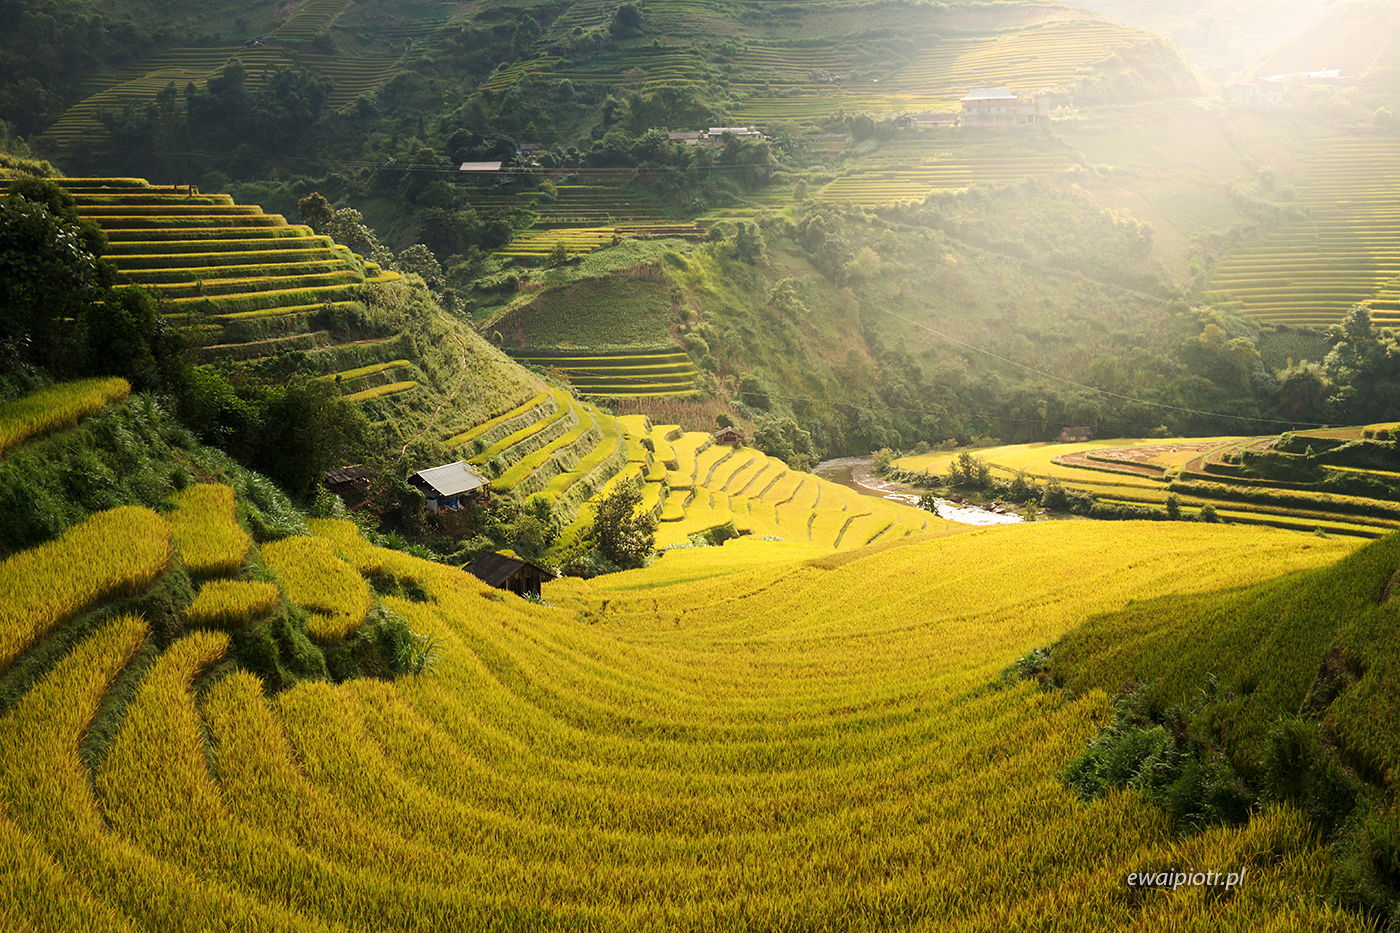 Złote tarasy pełne ryżu, Wietnam, wyprawa fotograficzna